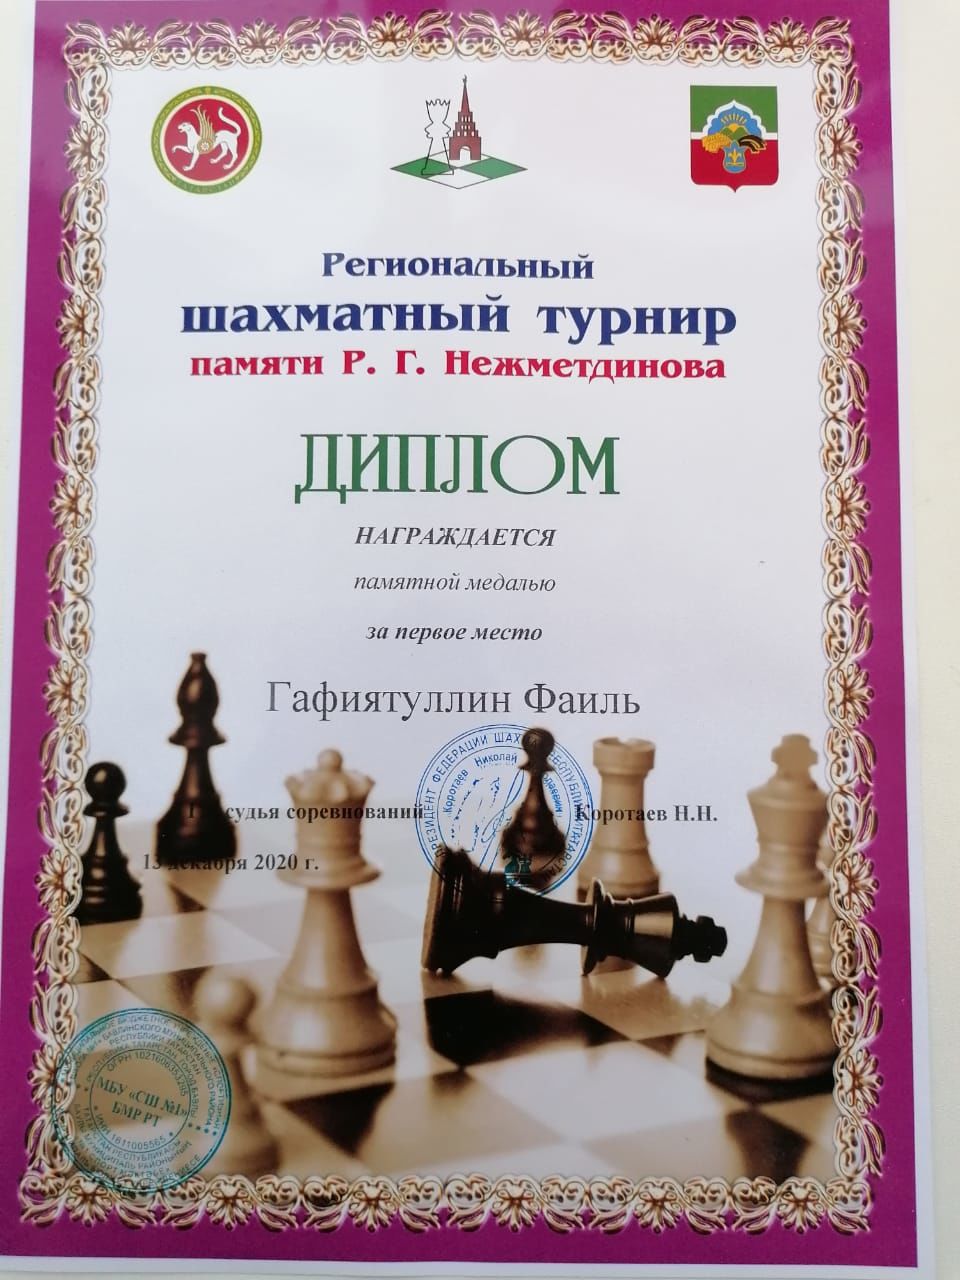 Шахматист из Аксубаевского района лучший по региону